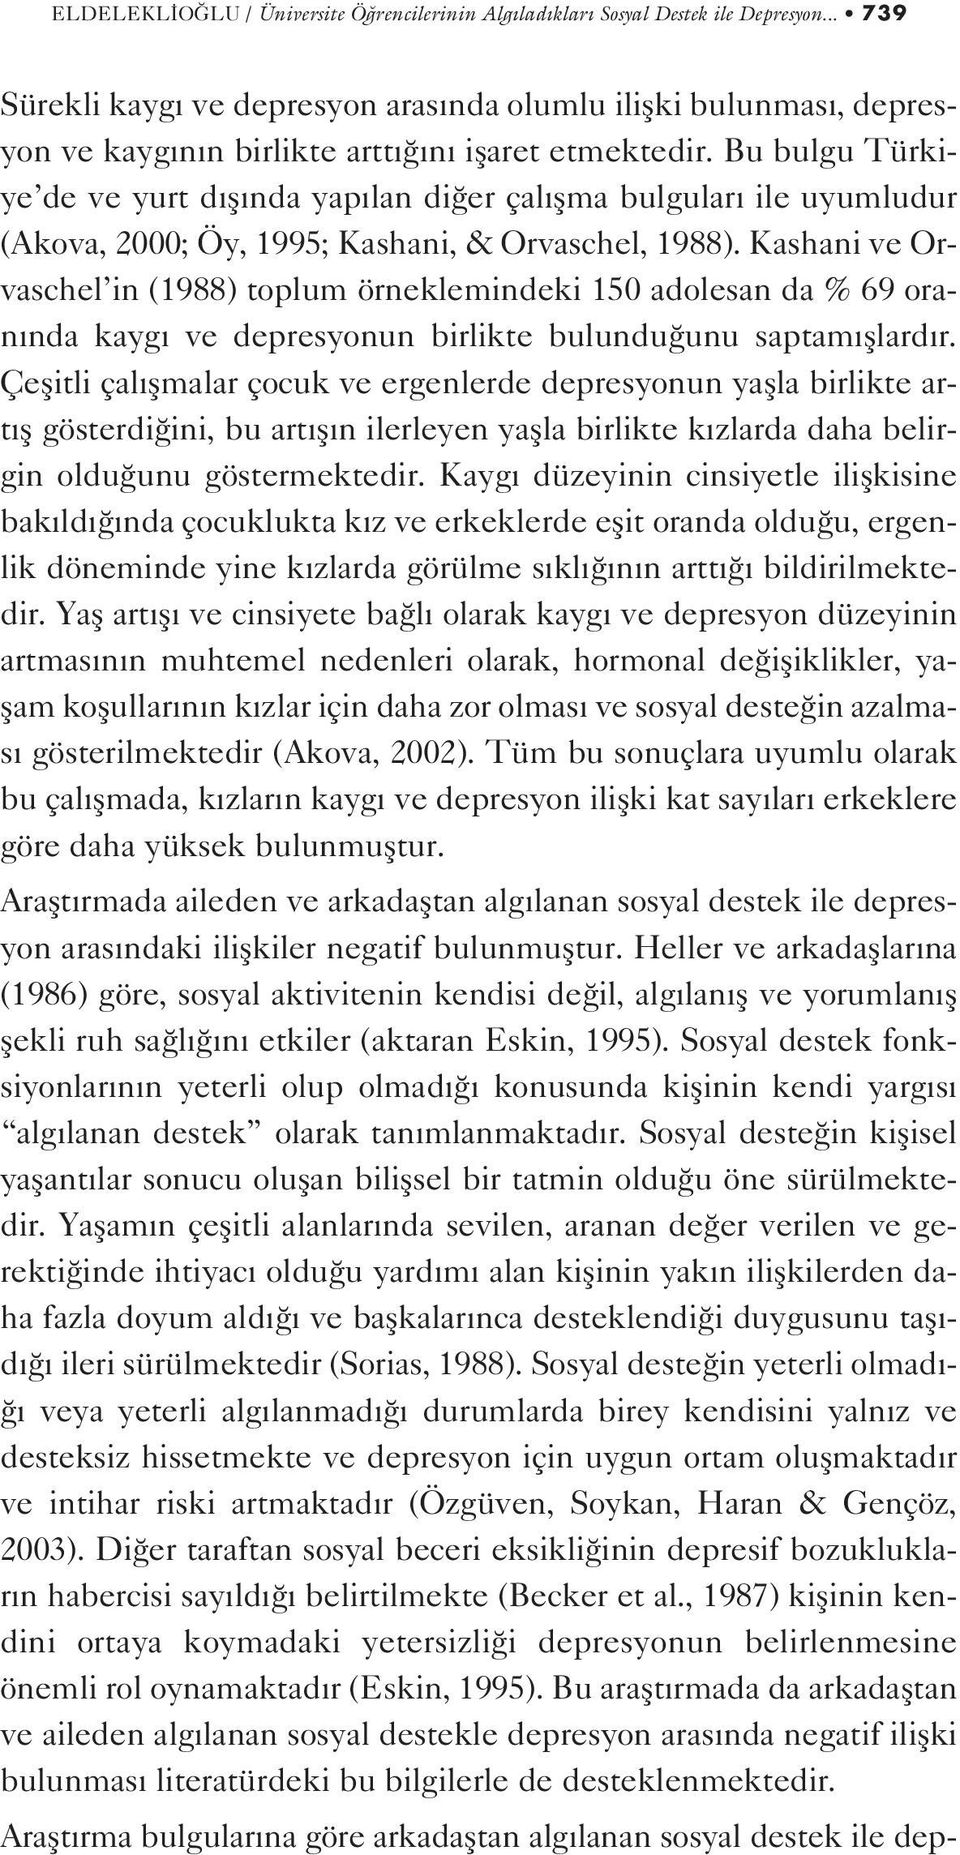 Bu bulgu Türkiye de ve yurt d fl nda yap lan di er çal flma bulgular ile uyumludur (Akova, 2000; Öy, 1995; Kashani, & Orvaschel, 1988).